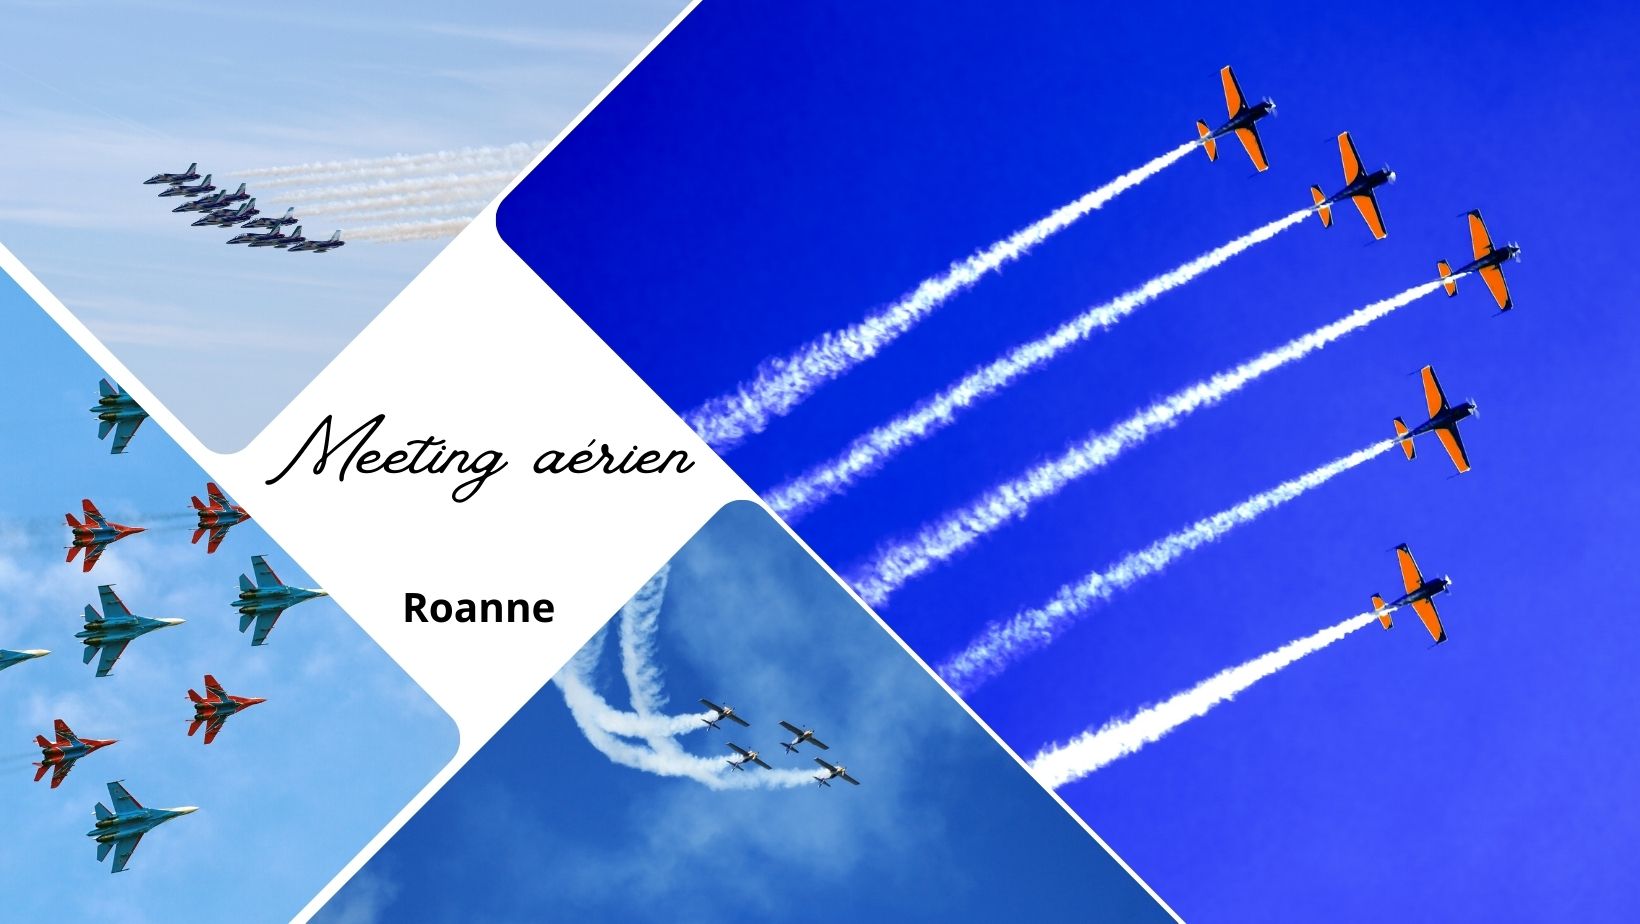 24e Meeting aérien international de Roanne le 16 et 17 septembre